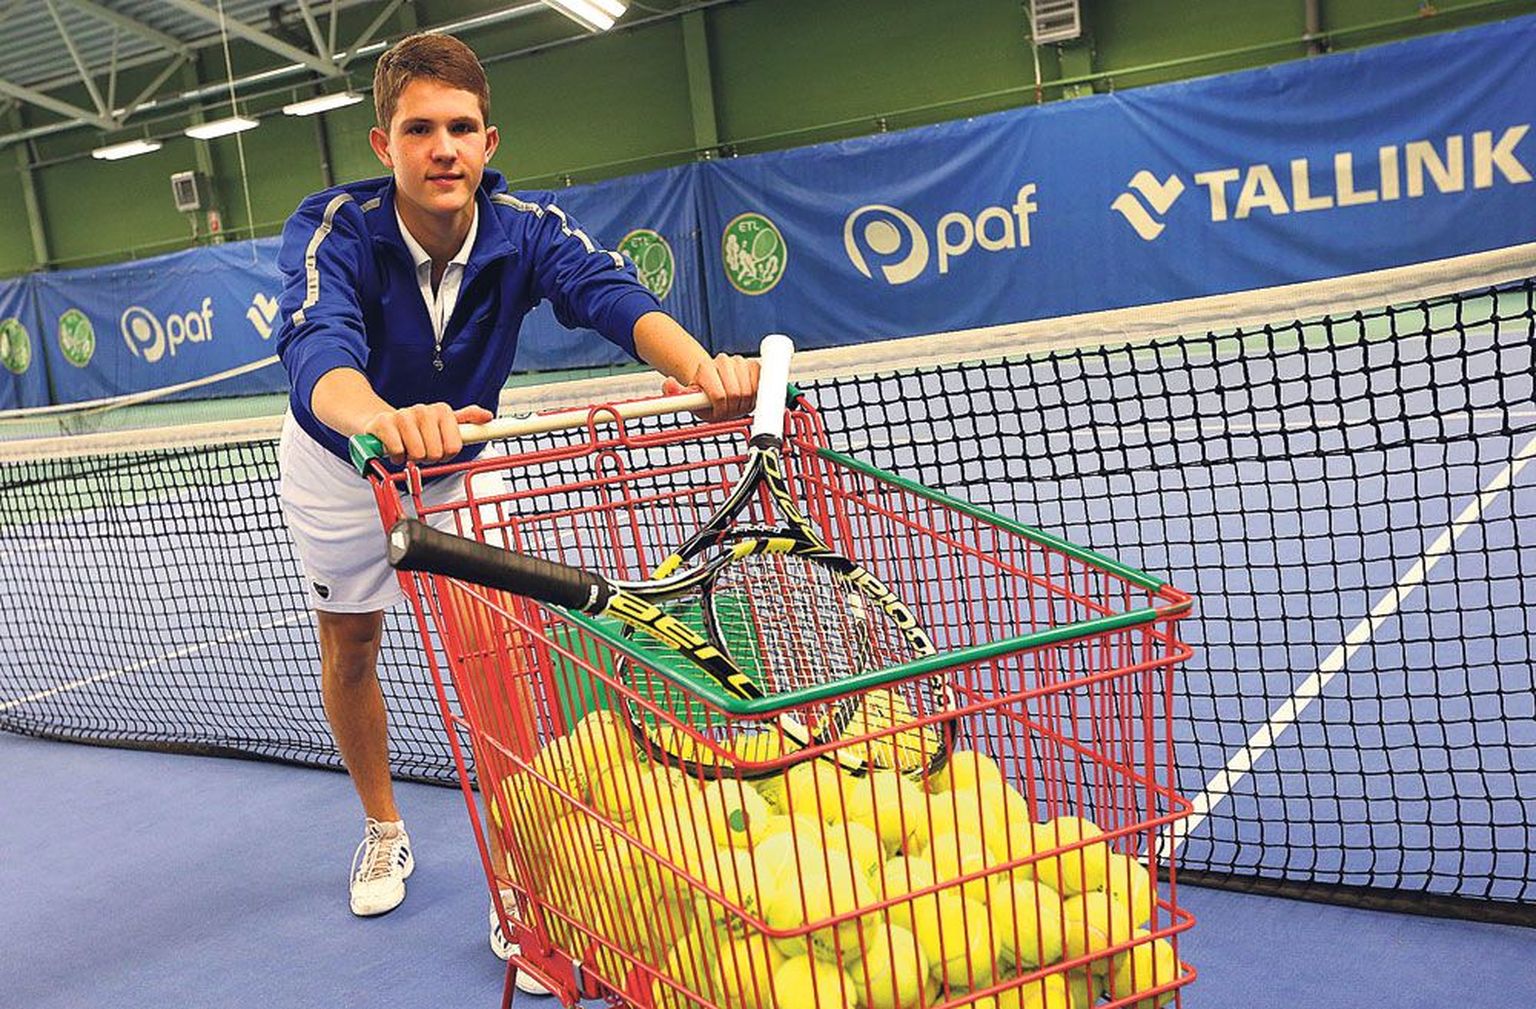 Turniiril saab kaasa elada 18-aastasele tennisistile Alan Braschinskyle, kes on ühtlasi ka Tartu meister.